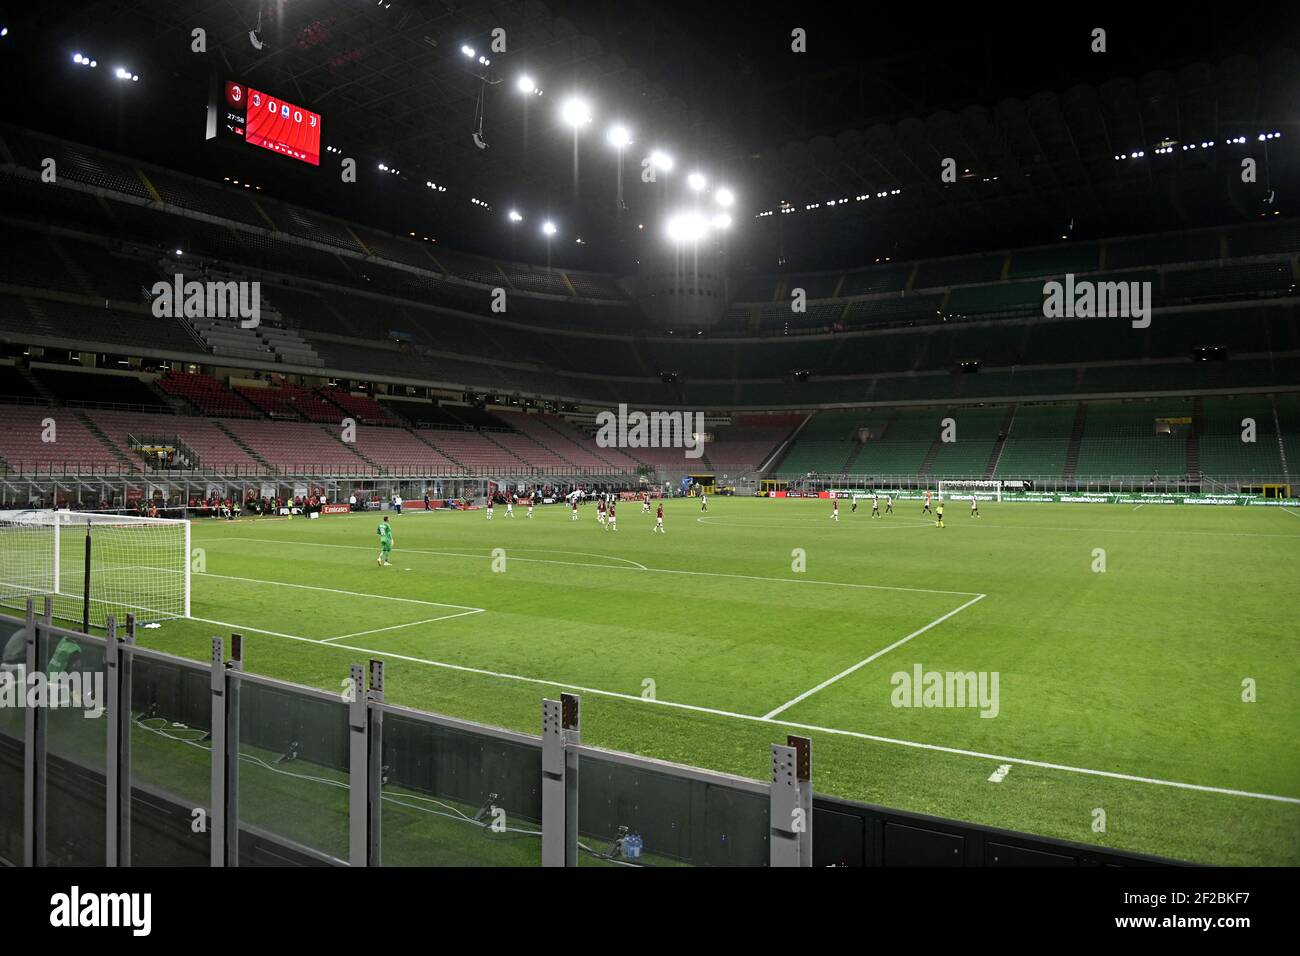 Serie italiana profesional un partido de fútbol jugado en un estadio vacío de Giuseppe Meazza, debido a las reglas saludables de Covid-19, en Milán.Italia. Foto de stock